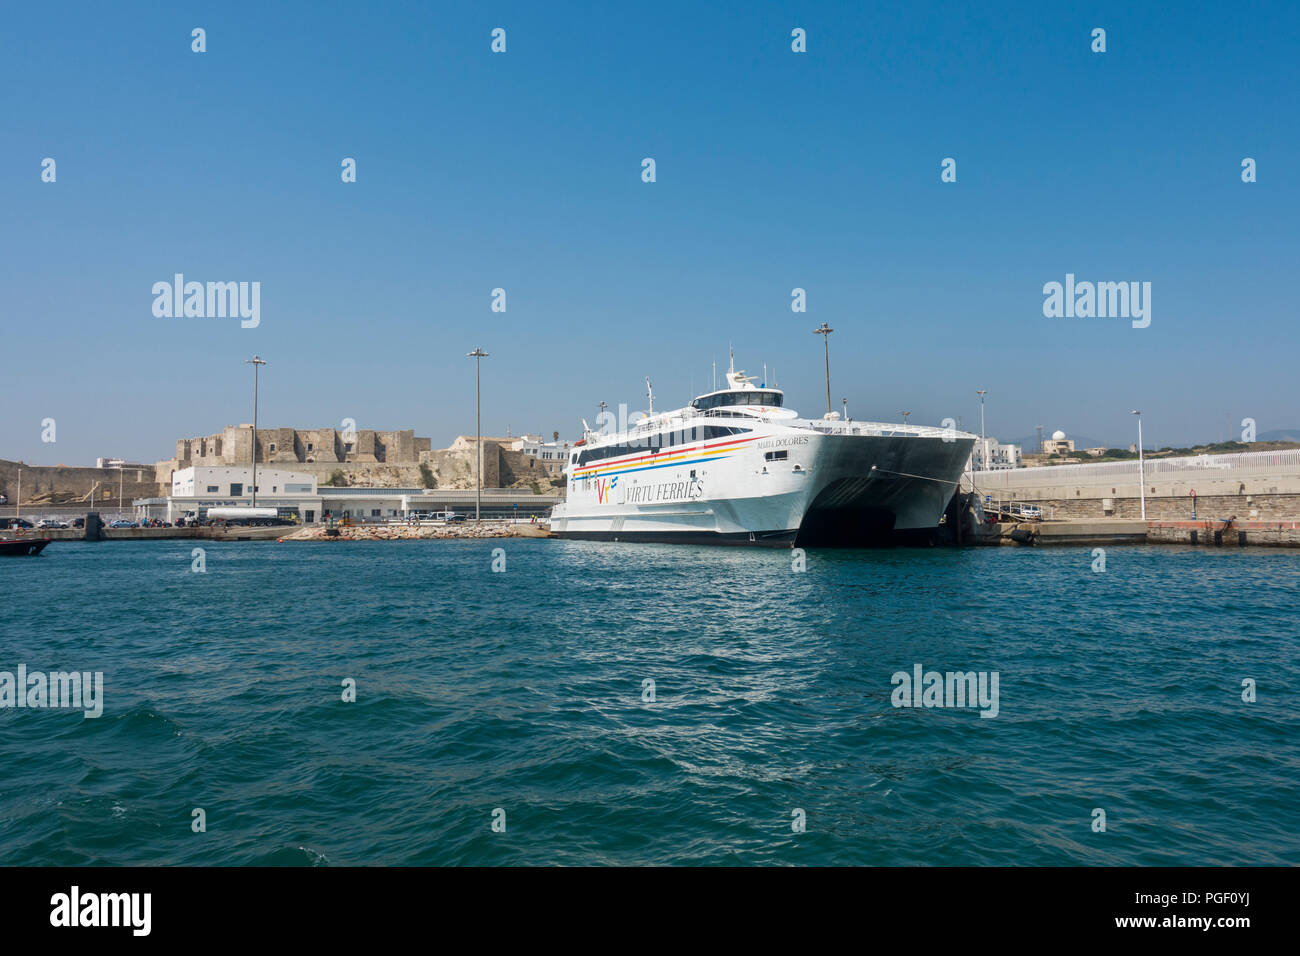 Ferry Port à Tarifa, Virtu Ferries, services aux passagers entre l'Espagne et le Maroc, l'Afrique du Nord, la Costa de la Luz, Andalousie, espagne. Banque D'Images